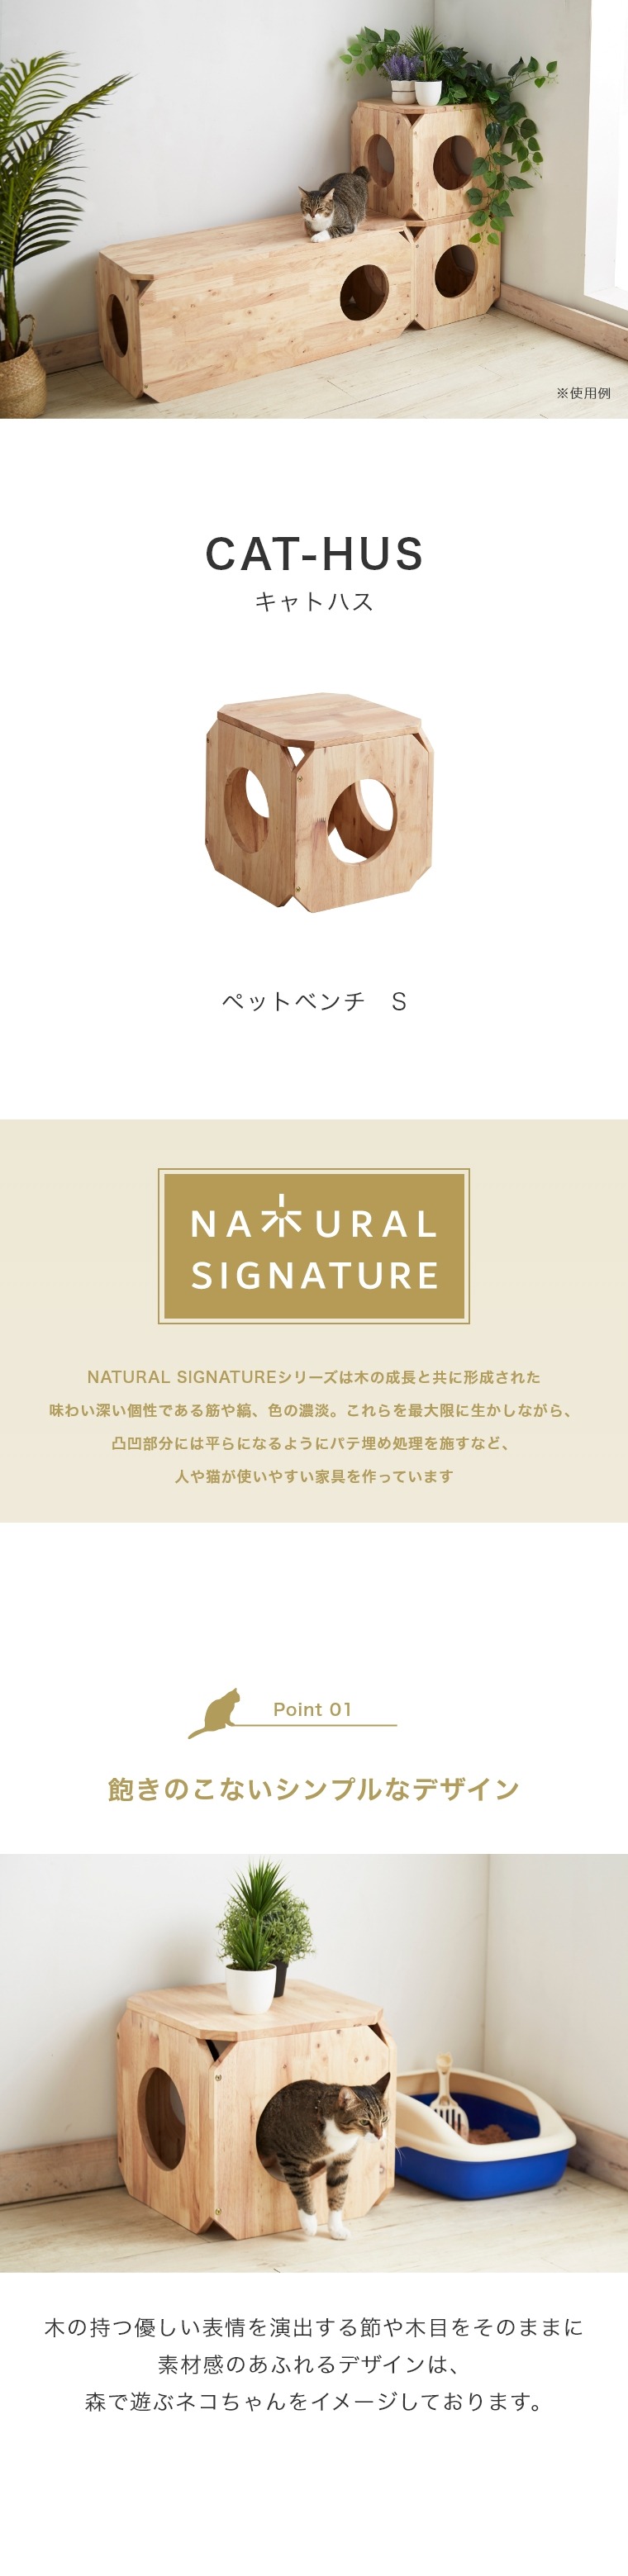 NATURAL SIGNATURE LgnX ybgx` S